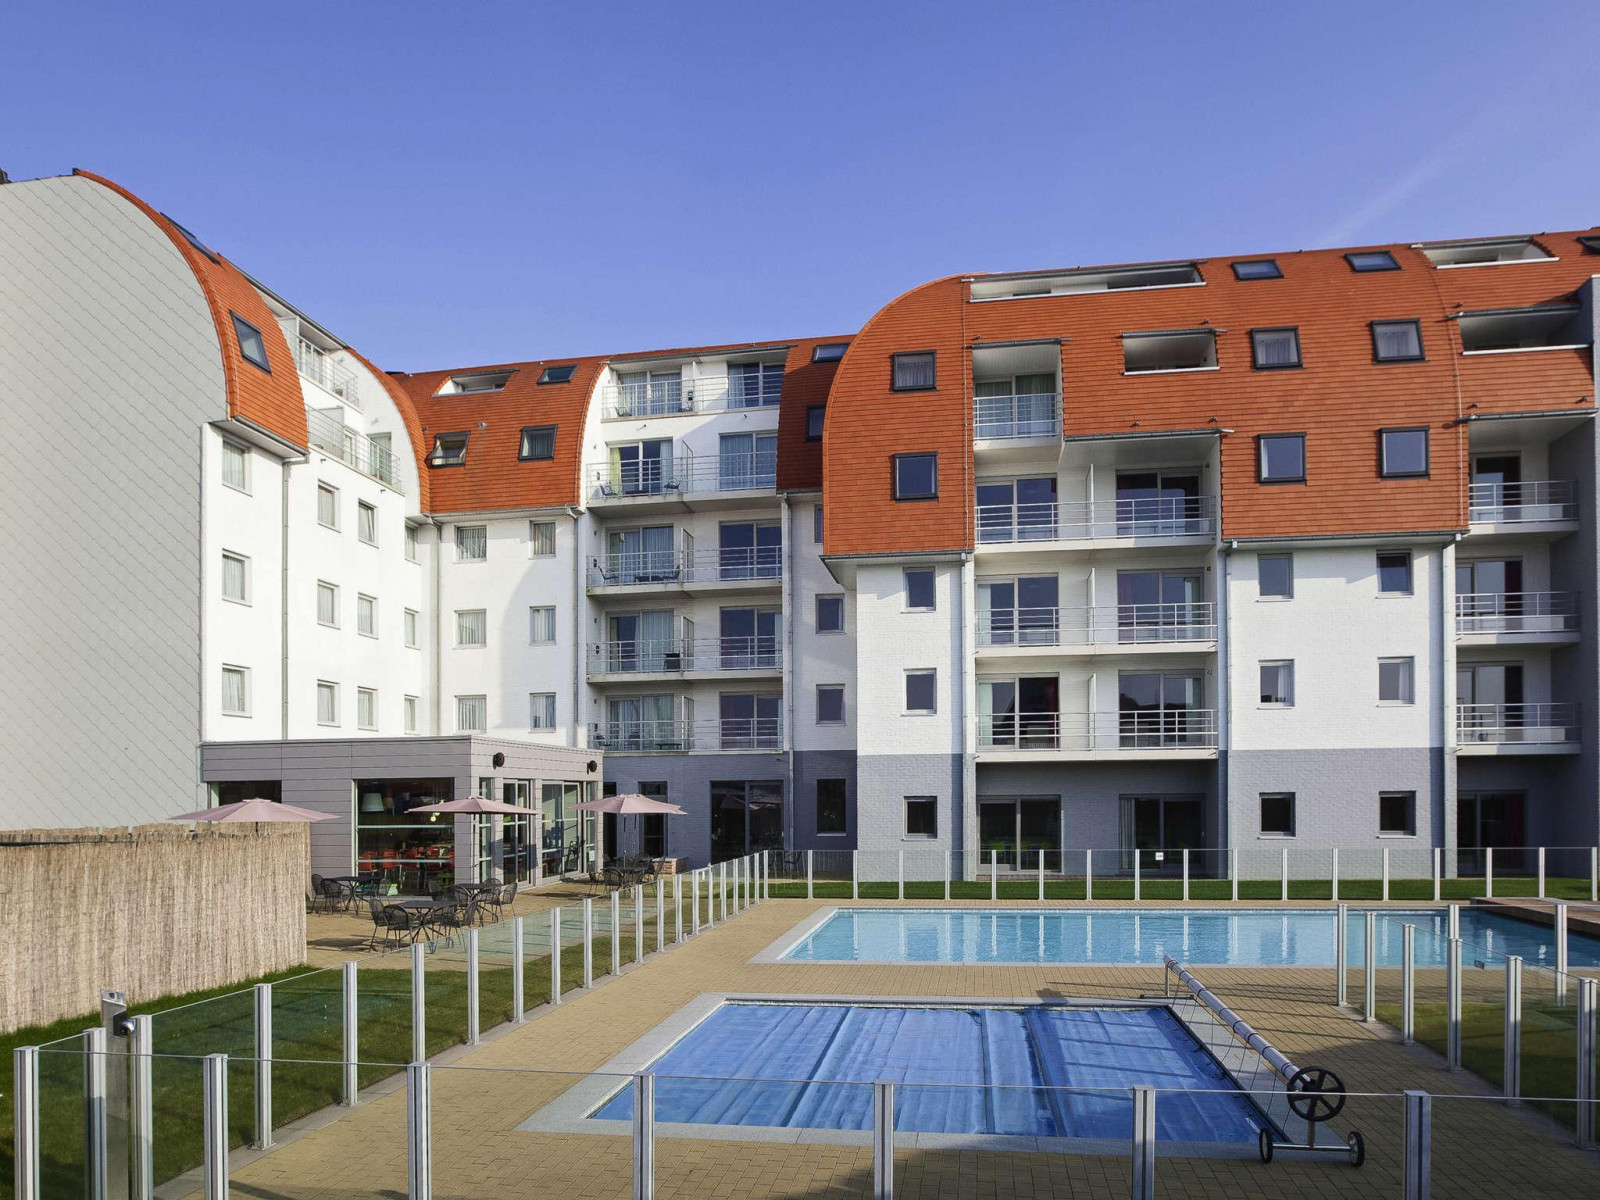 Heerlijkehuisjes.nl Mooi 6 persoons appartement aan de haven van Zeebrugge - Belgie - Europa - Zeebrugge